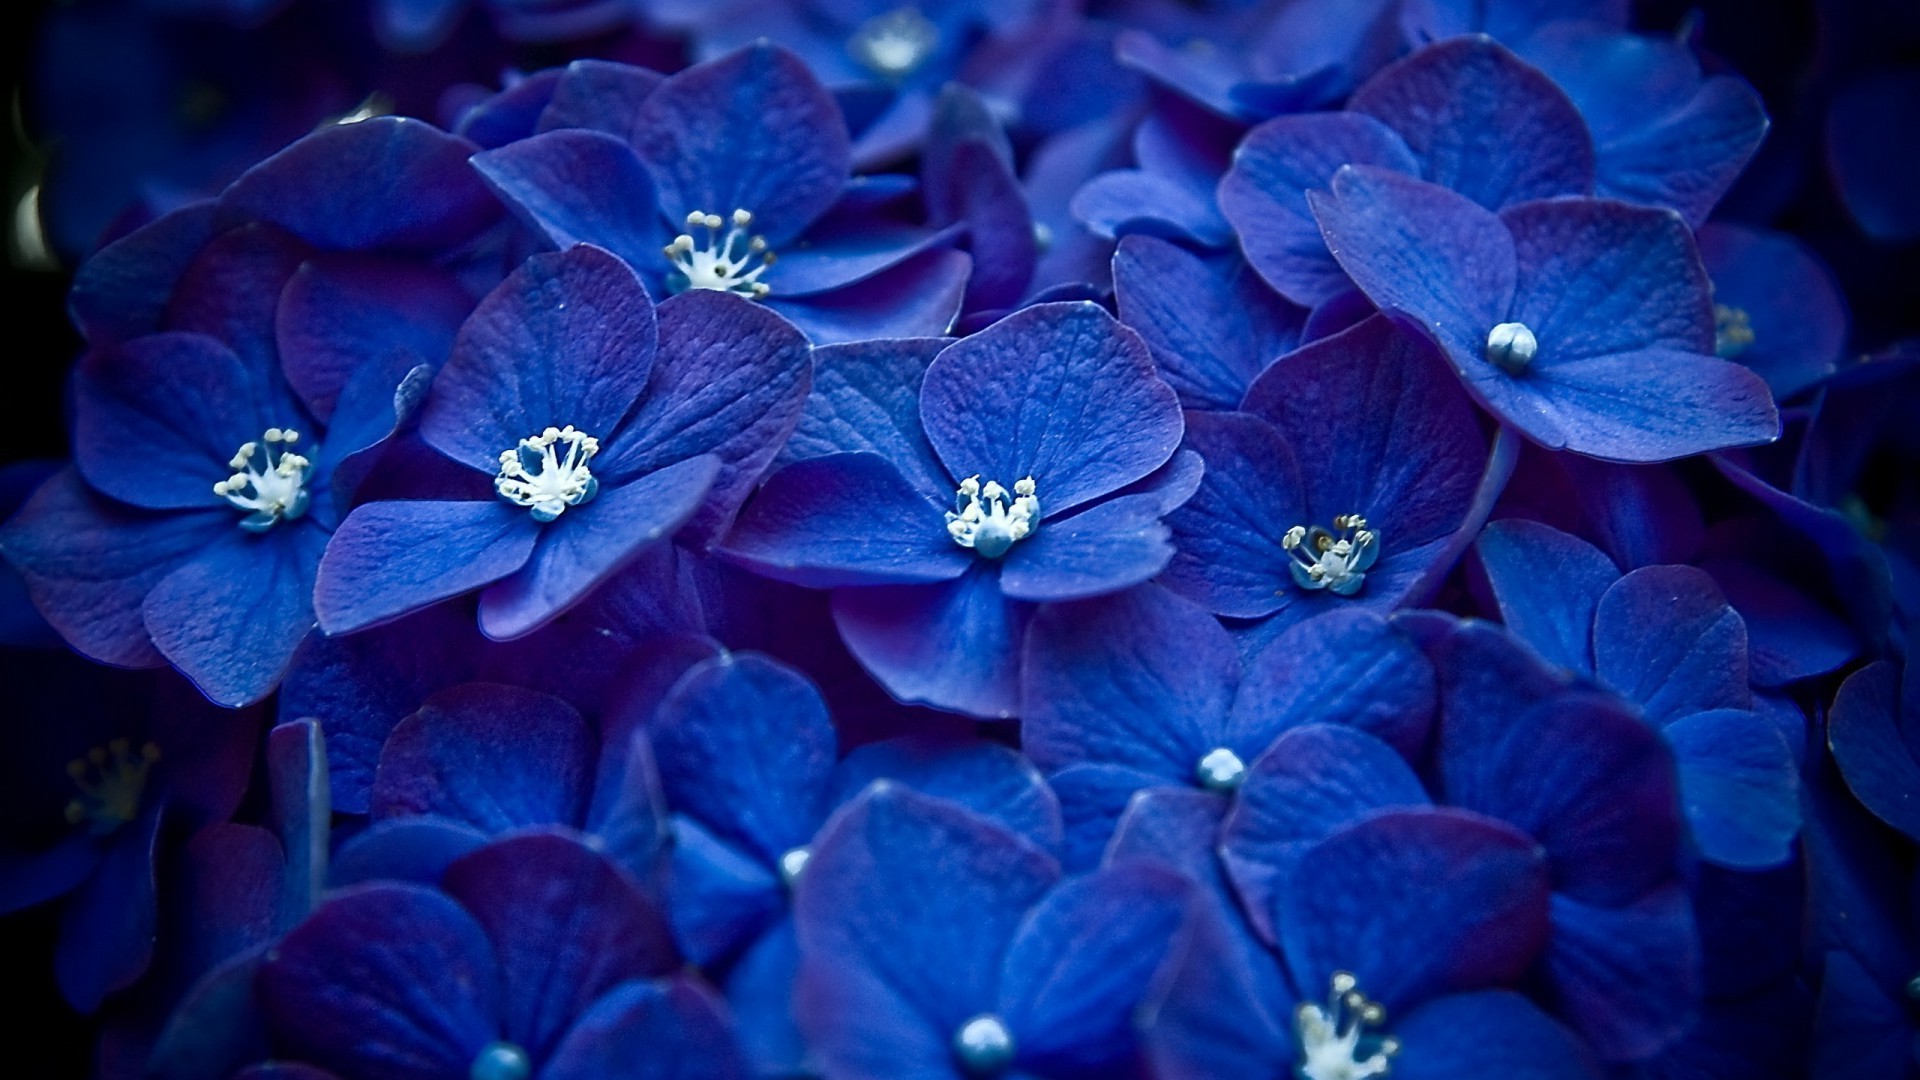 Обои на айфон синие цветы